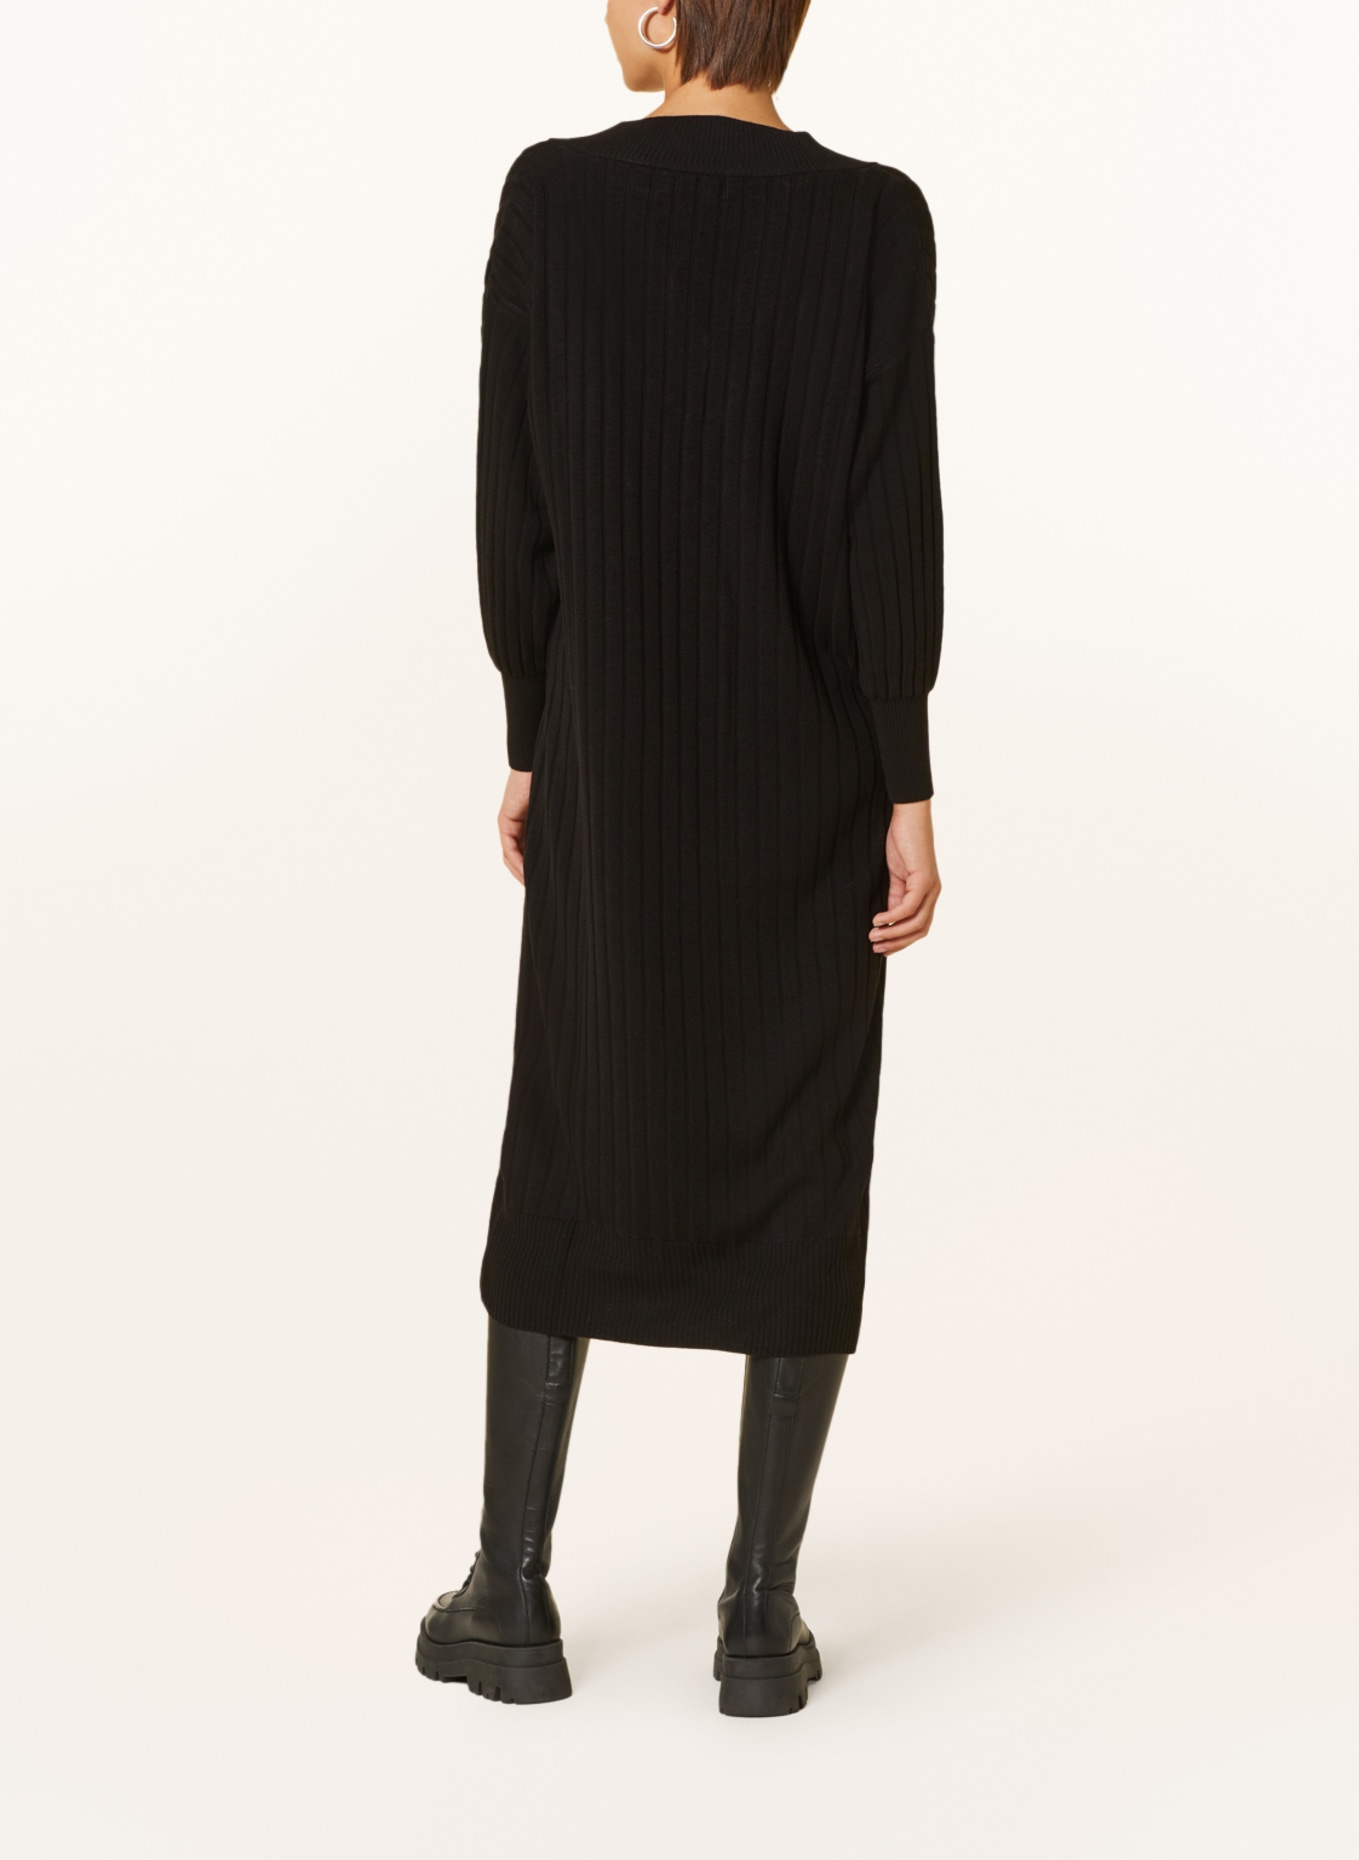 ONLY Knit dress, Color: BLACK (Image 3)